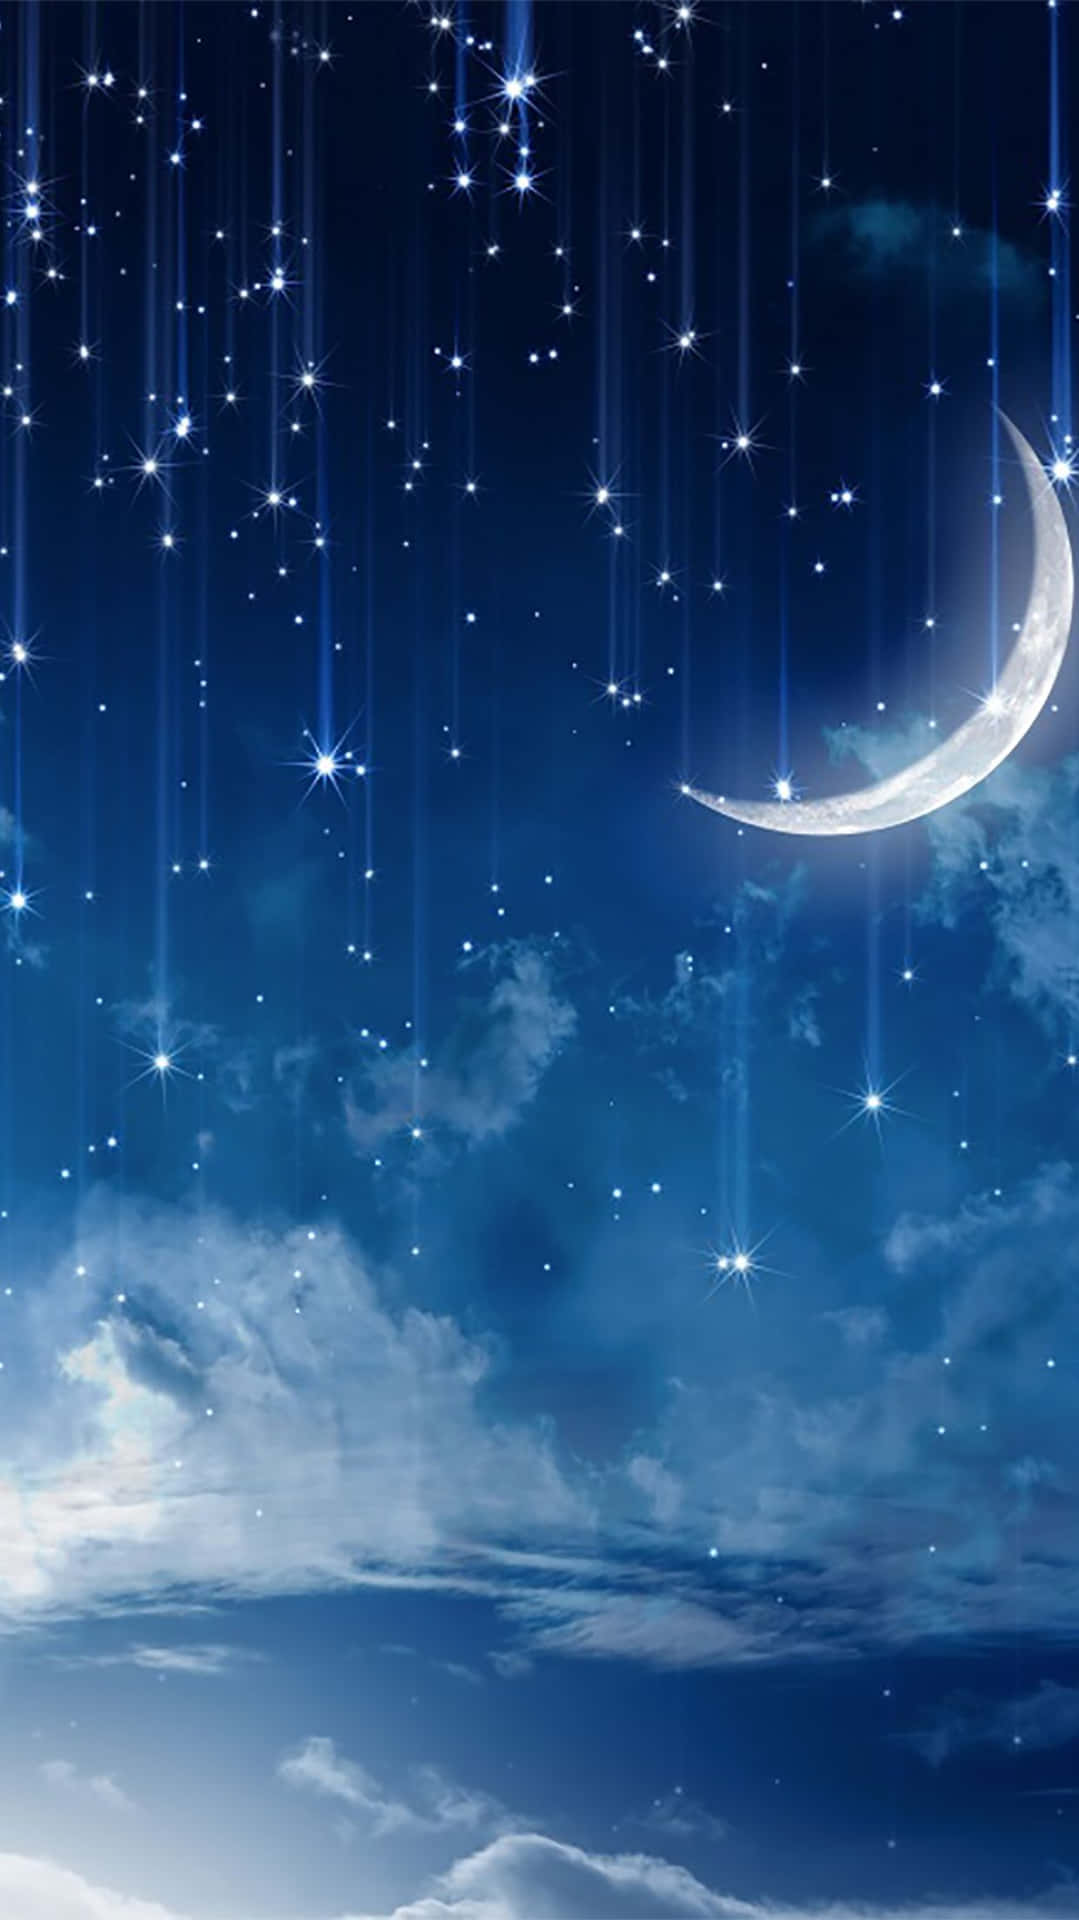 Imagende La Noche Con Luna Y Estrellas Cayendo.